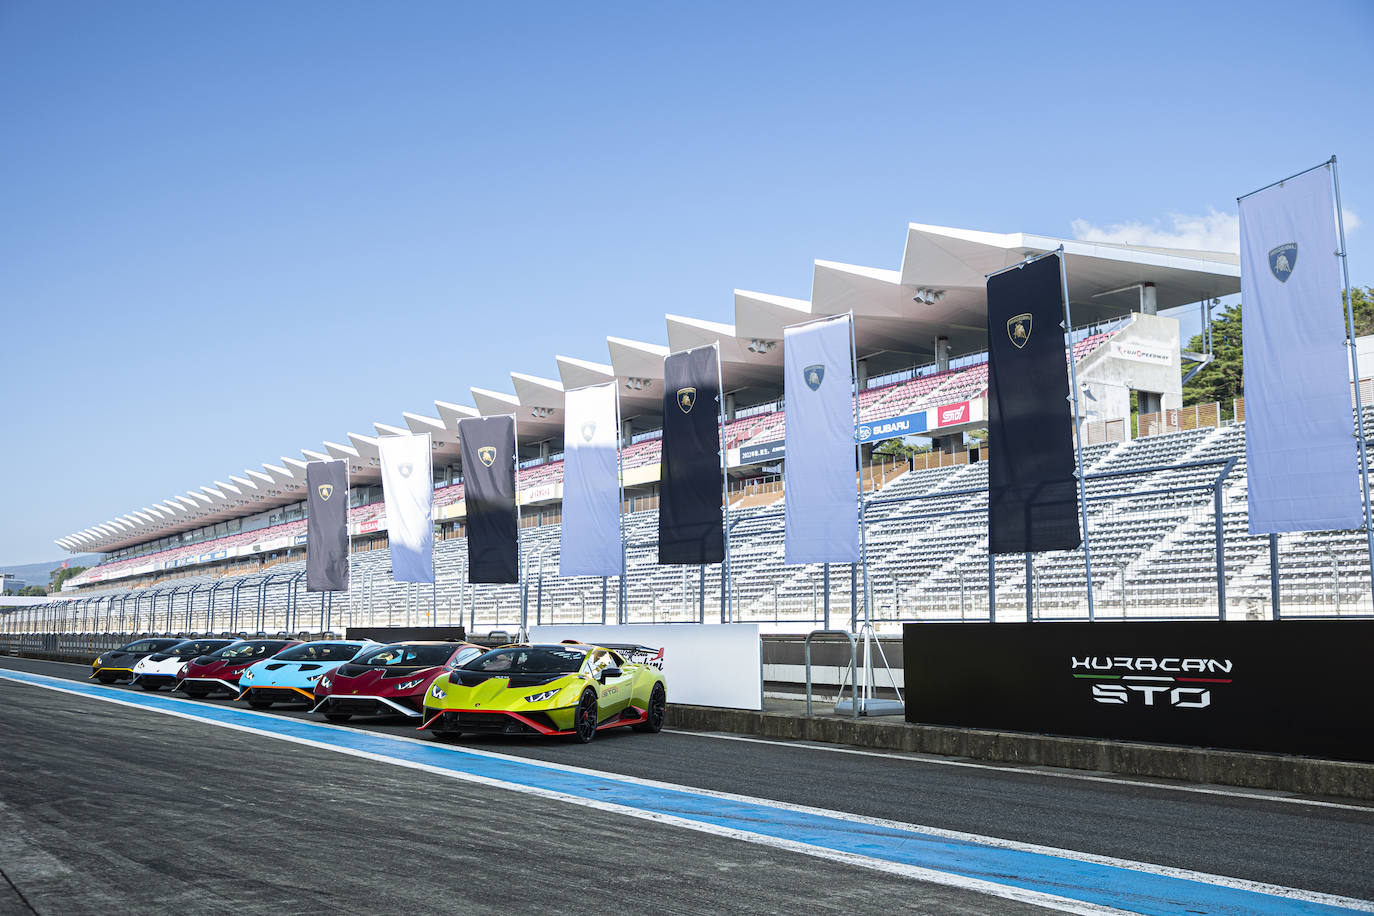 Fotos: Lamborghini Huracán: creado para carretera e inspirado en la competición